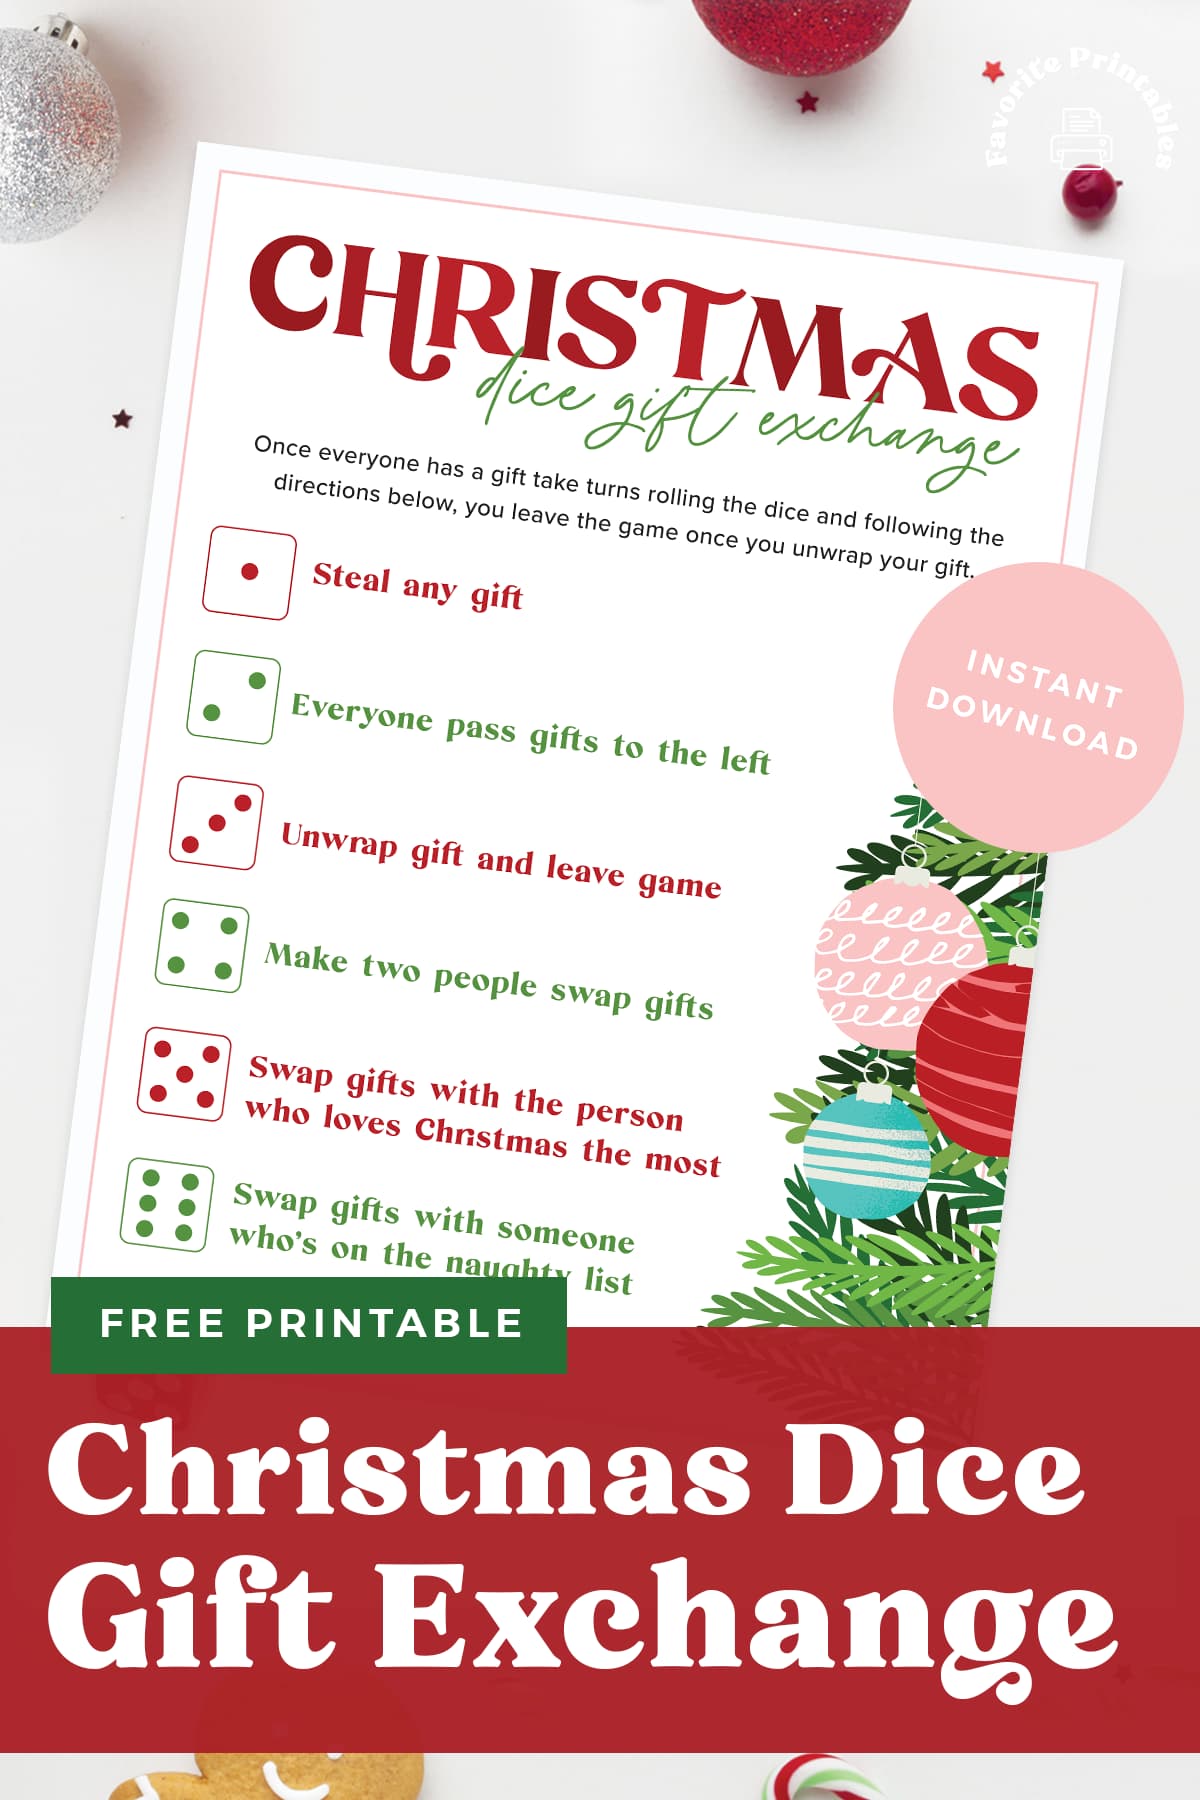 Christmas dice game free printable template pin.